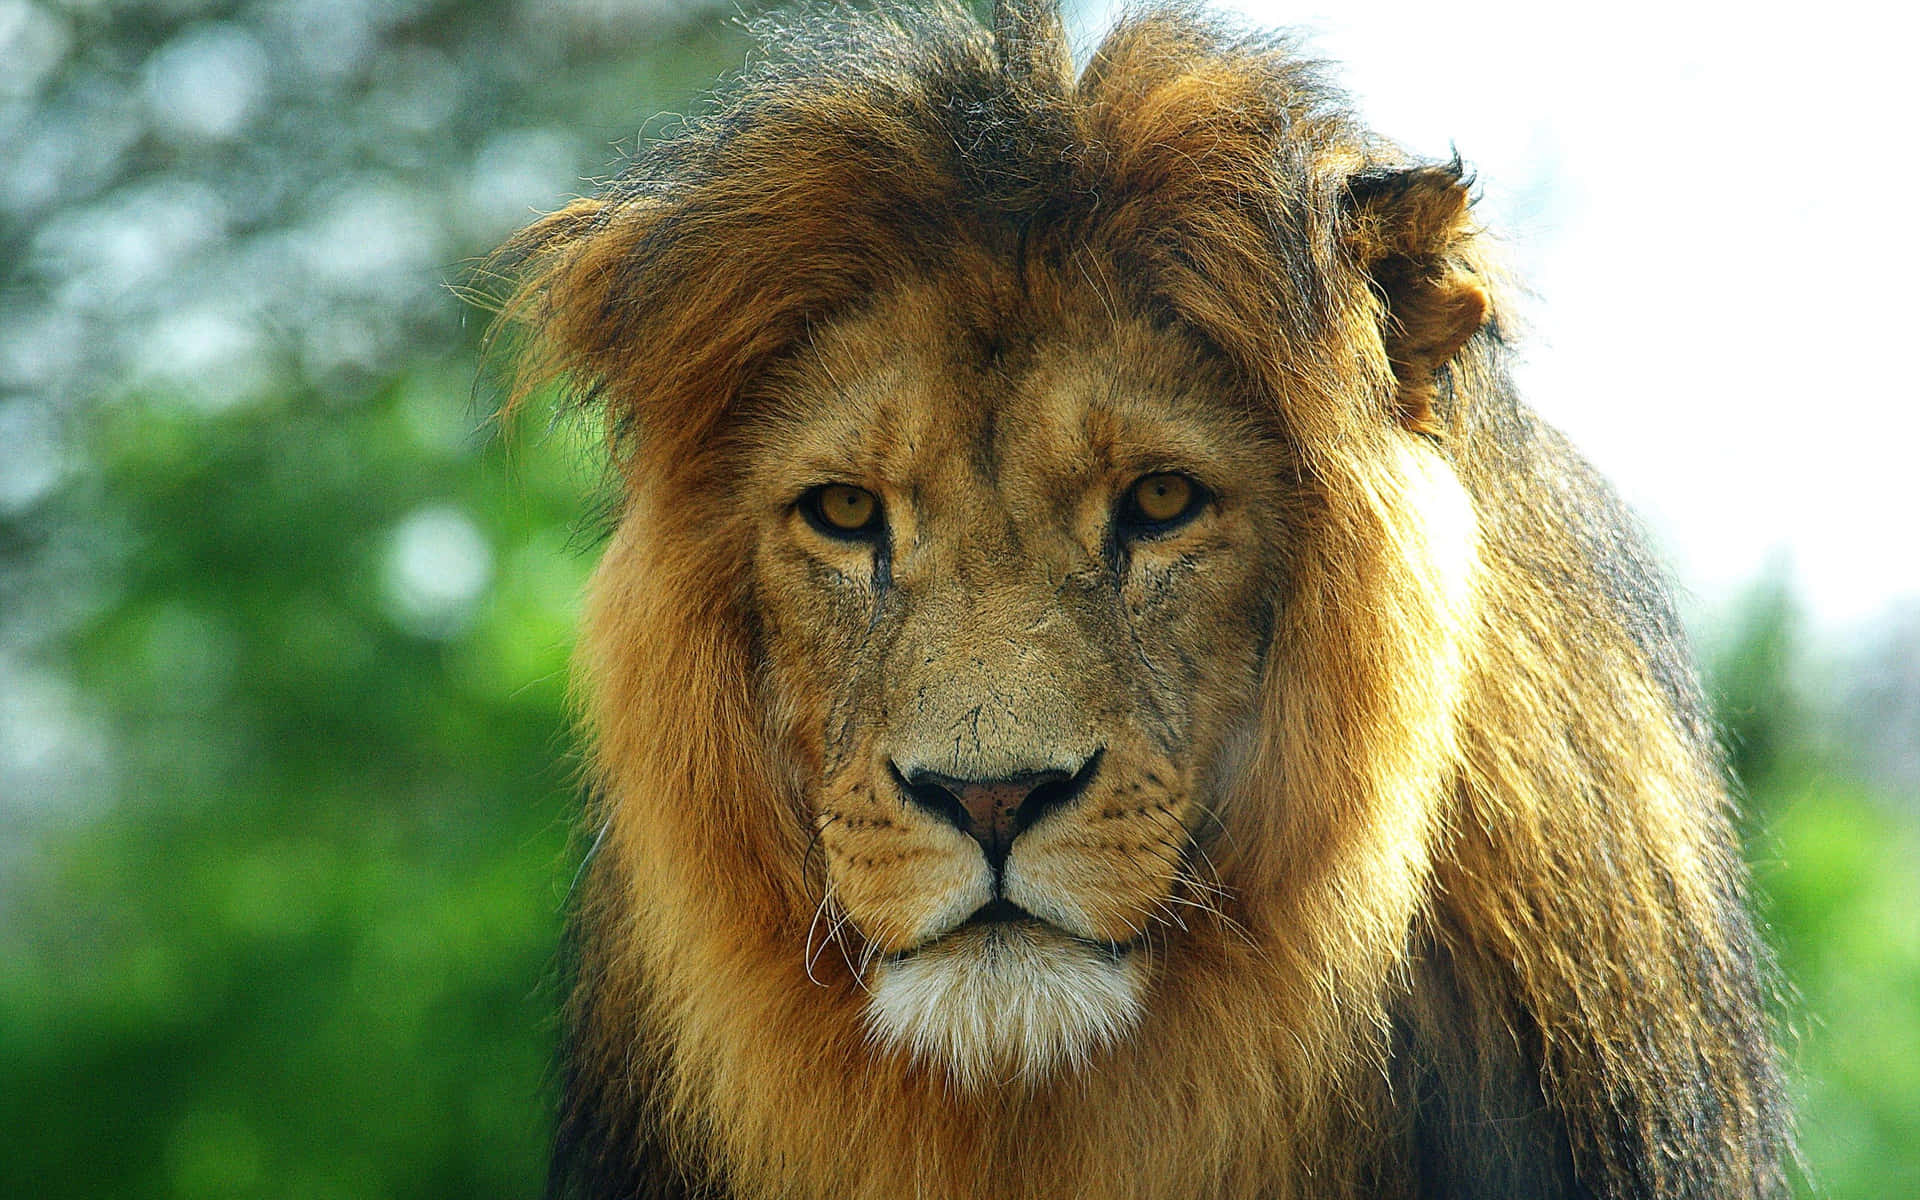 Majestic lion face ready to roar